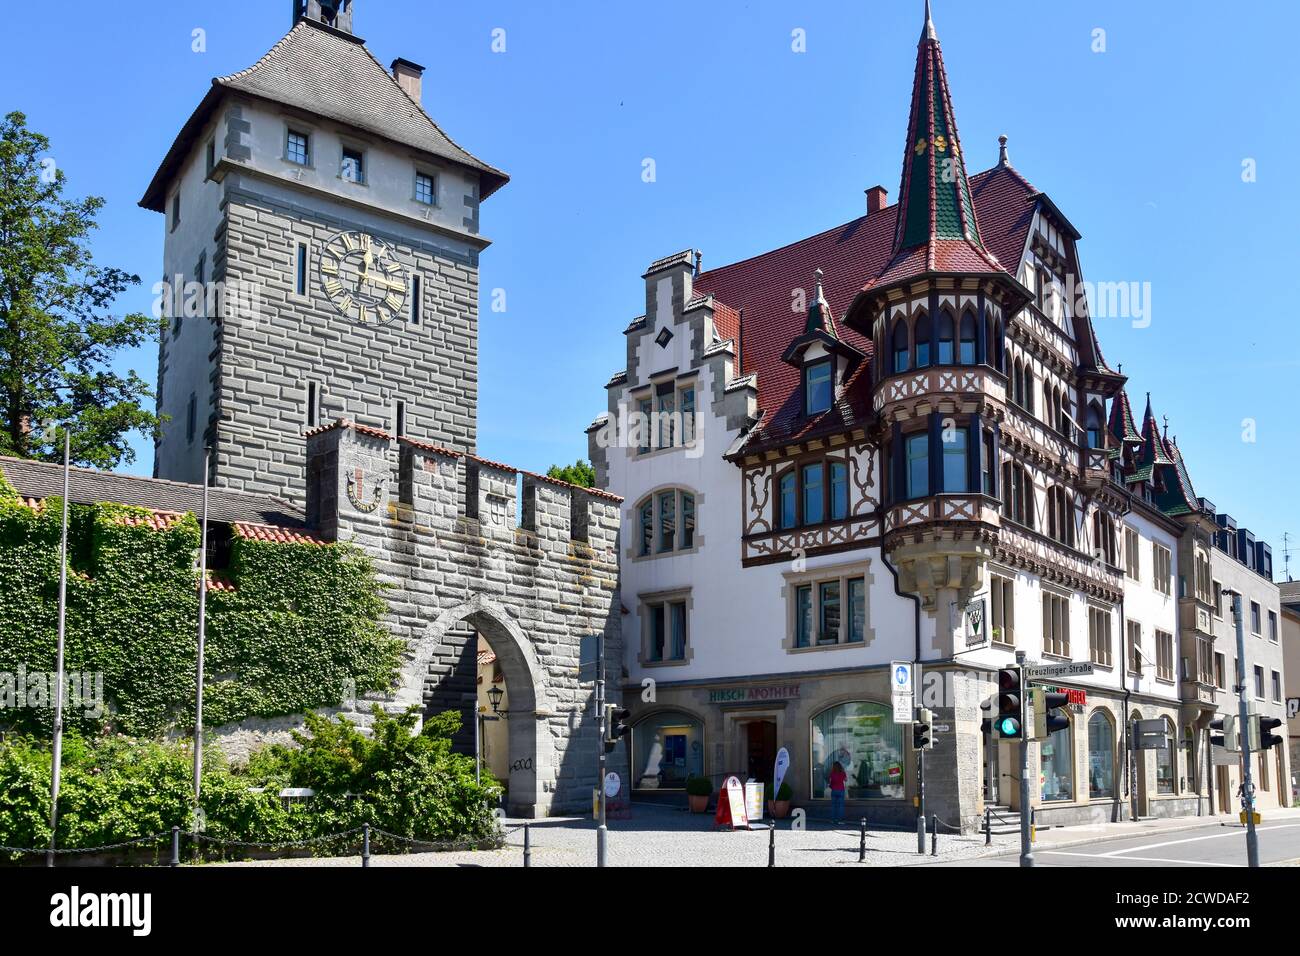 Konstanz, Alemania - 27 de mayo de 2020: Schnetztor, puerta fortificada de las antiguas murallas de la ciudad. Foto de stock